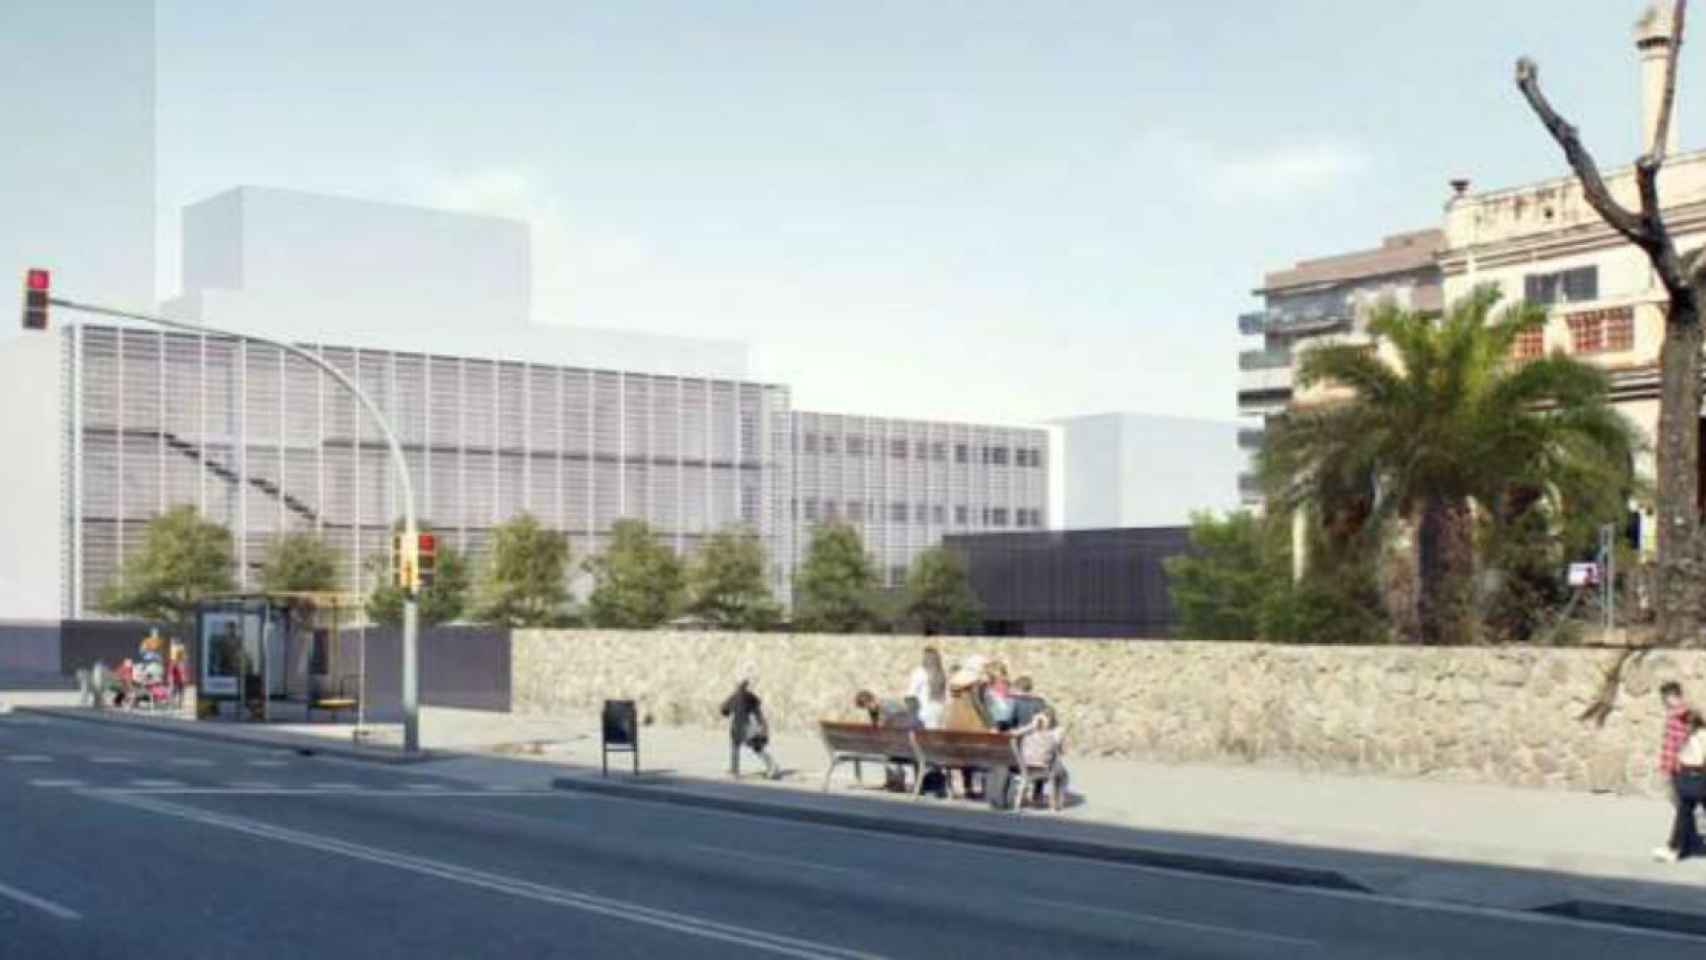 Imagen ideal del proyecto de ampliación del colegio Ignasi Iglesias / CEB